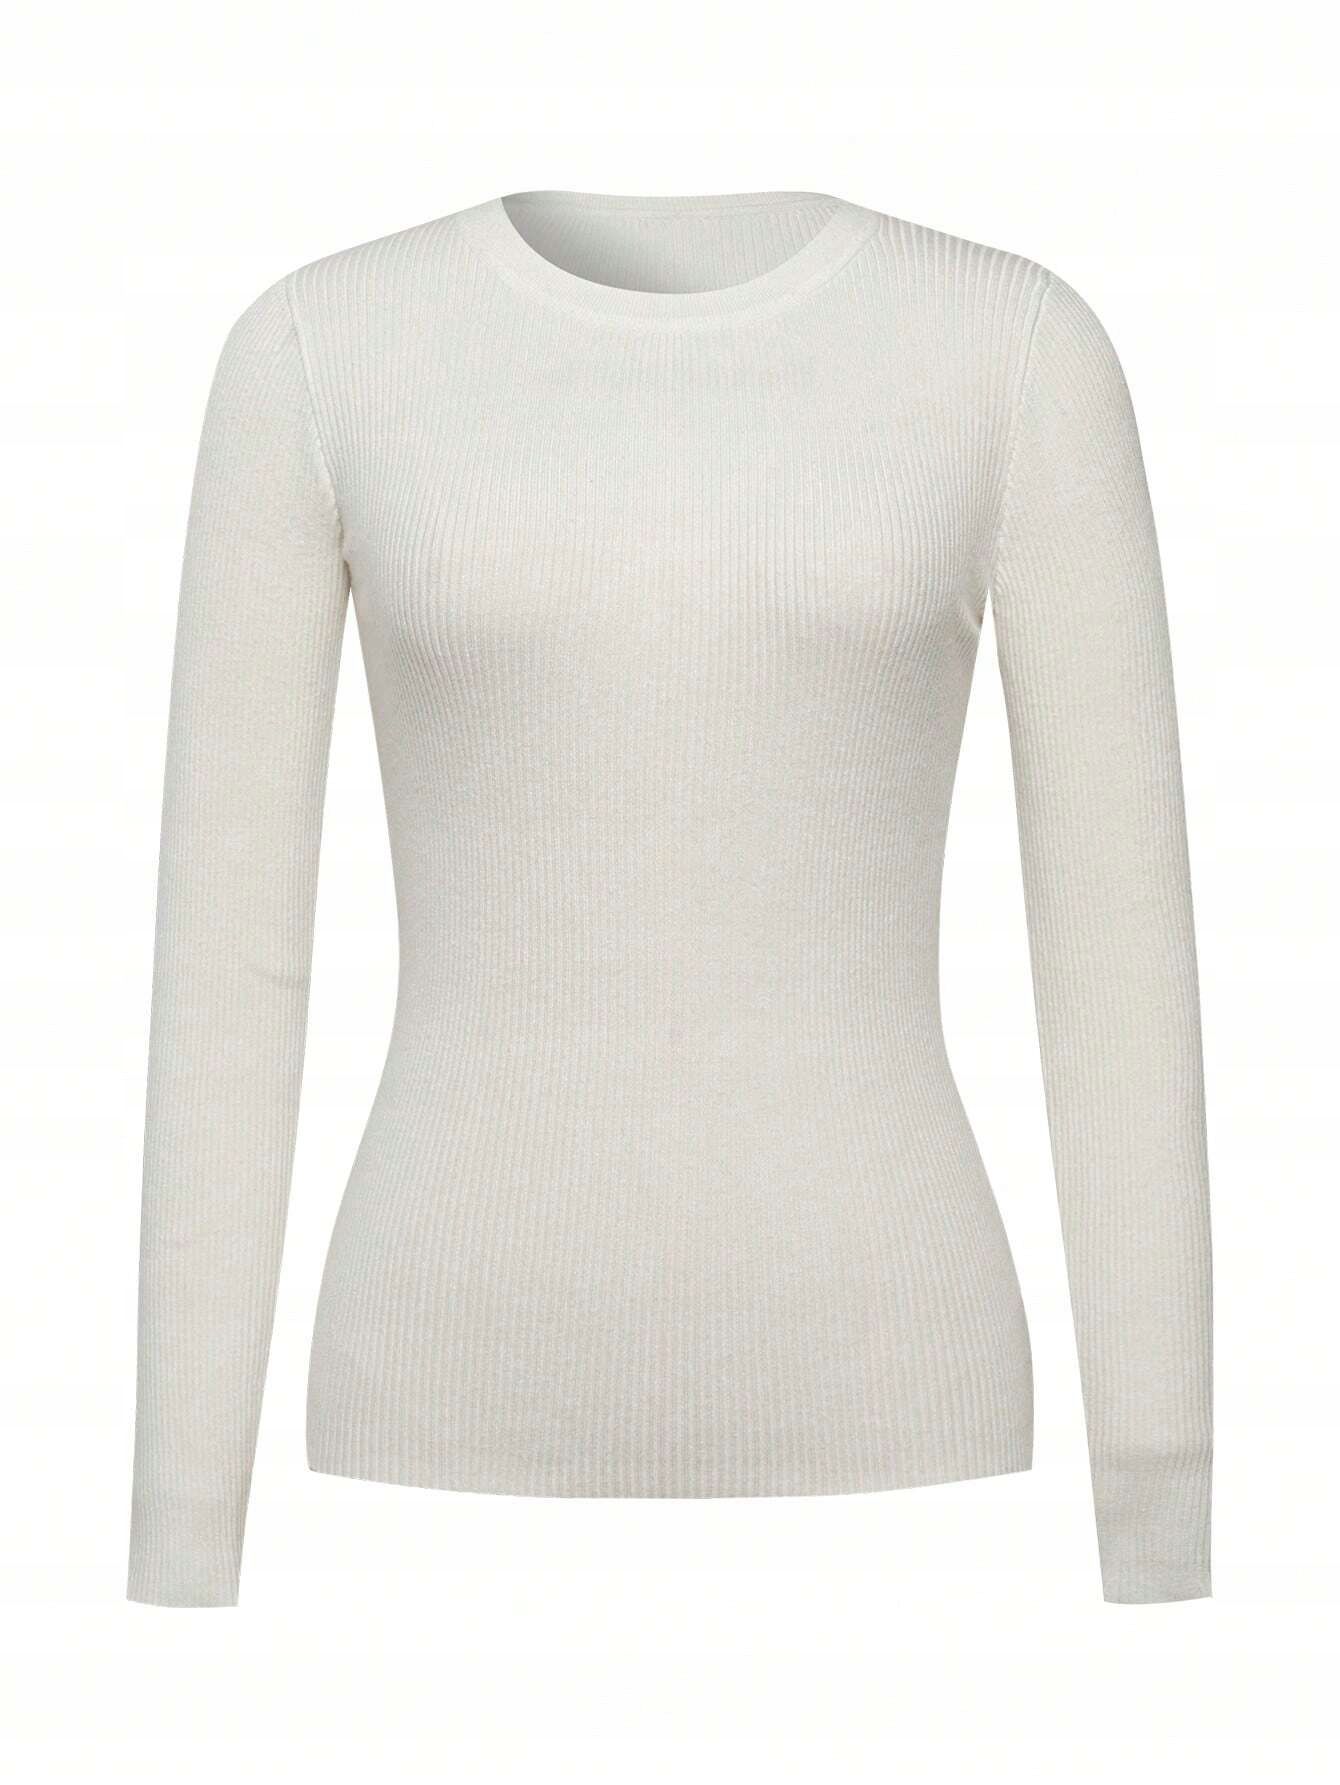 Sweterek Prążkowany Dopasowany Biały Casual Shein L 40